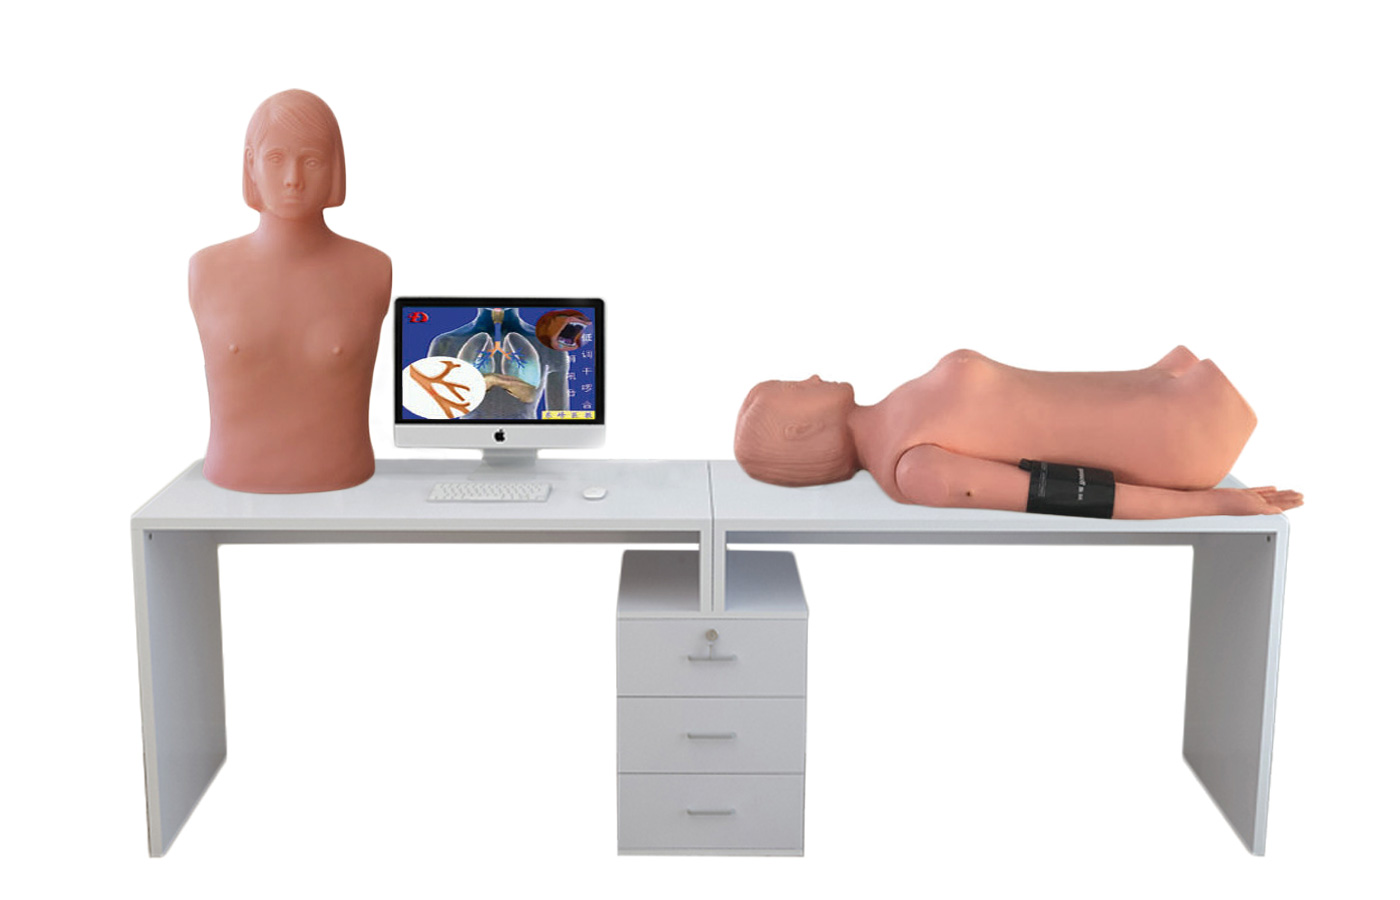 HD/XF9000A 智能型網絡多媒體胸腹部檢查教學系統